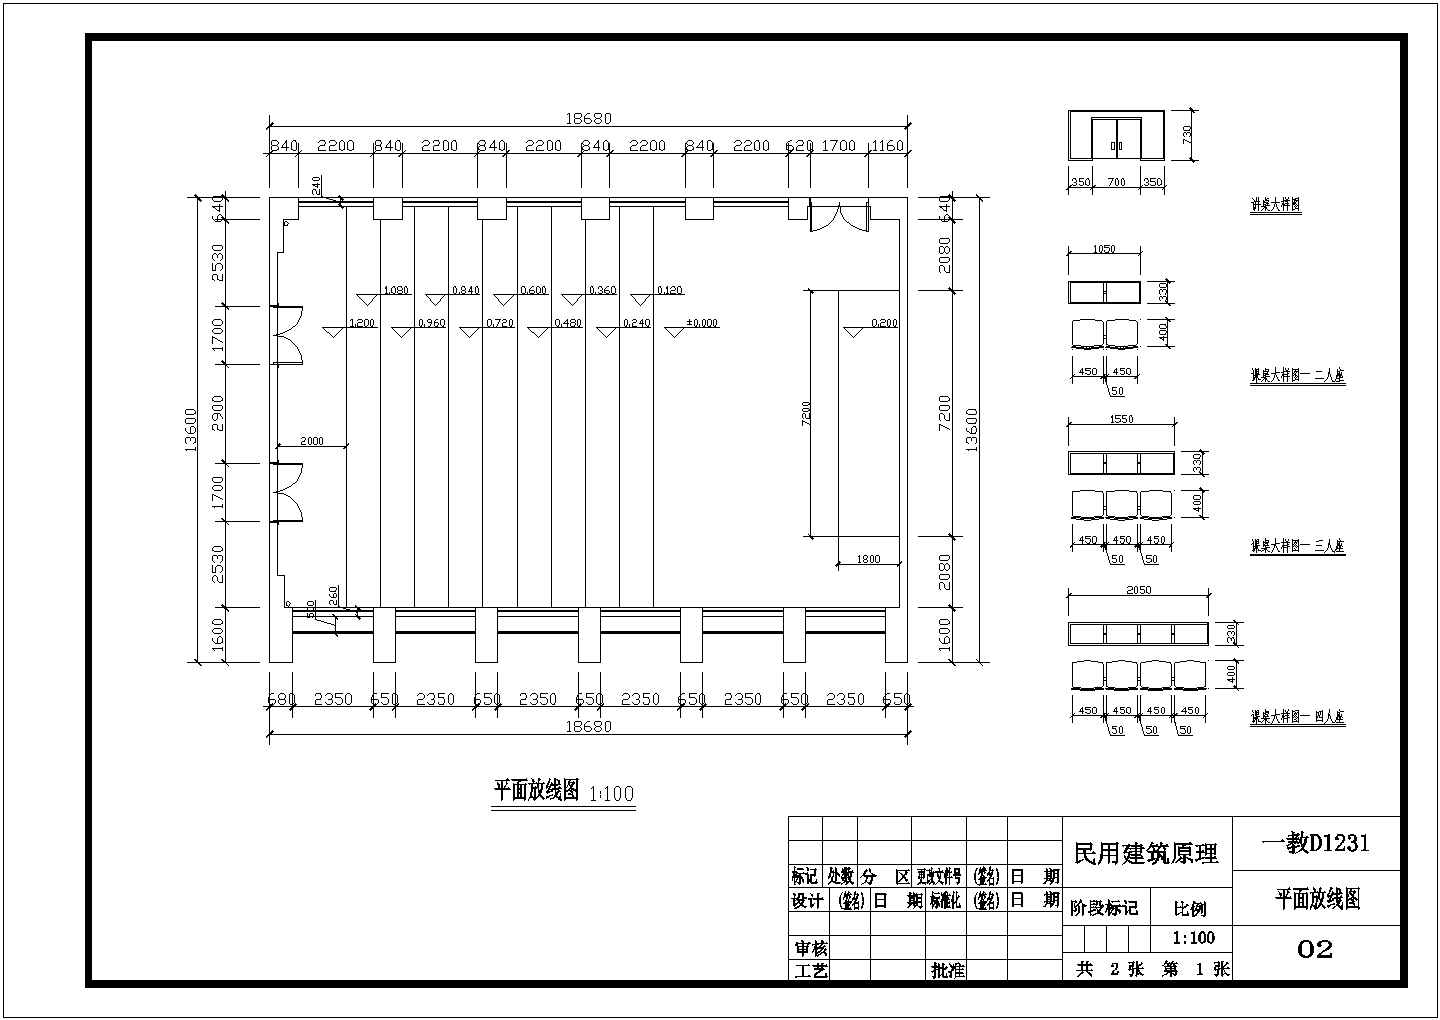 重庆大学虎溪校区某阶梯形教室平面布局图